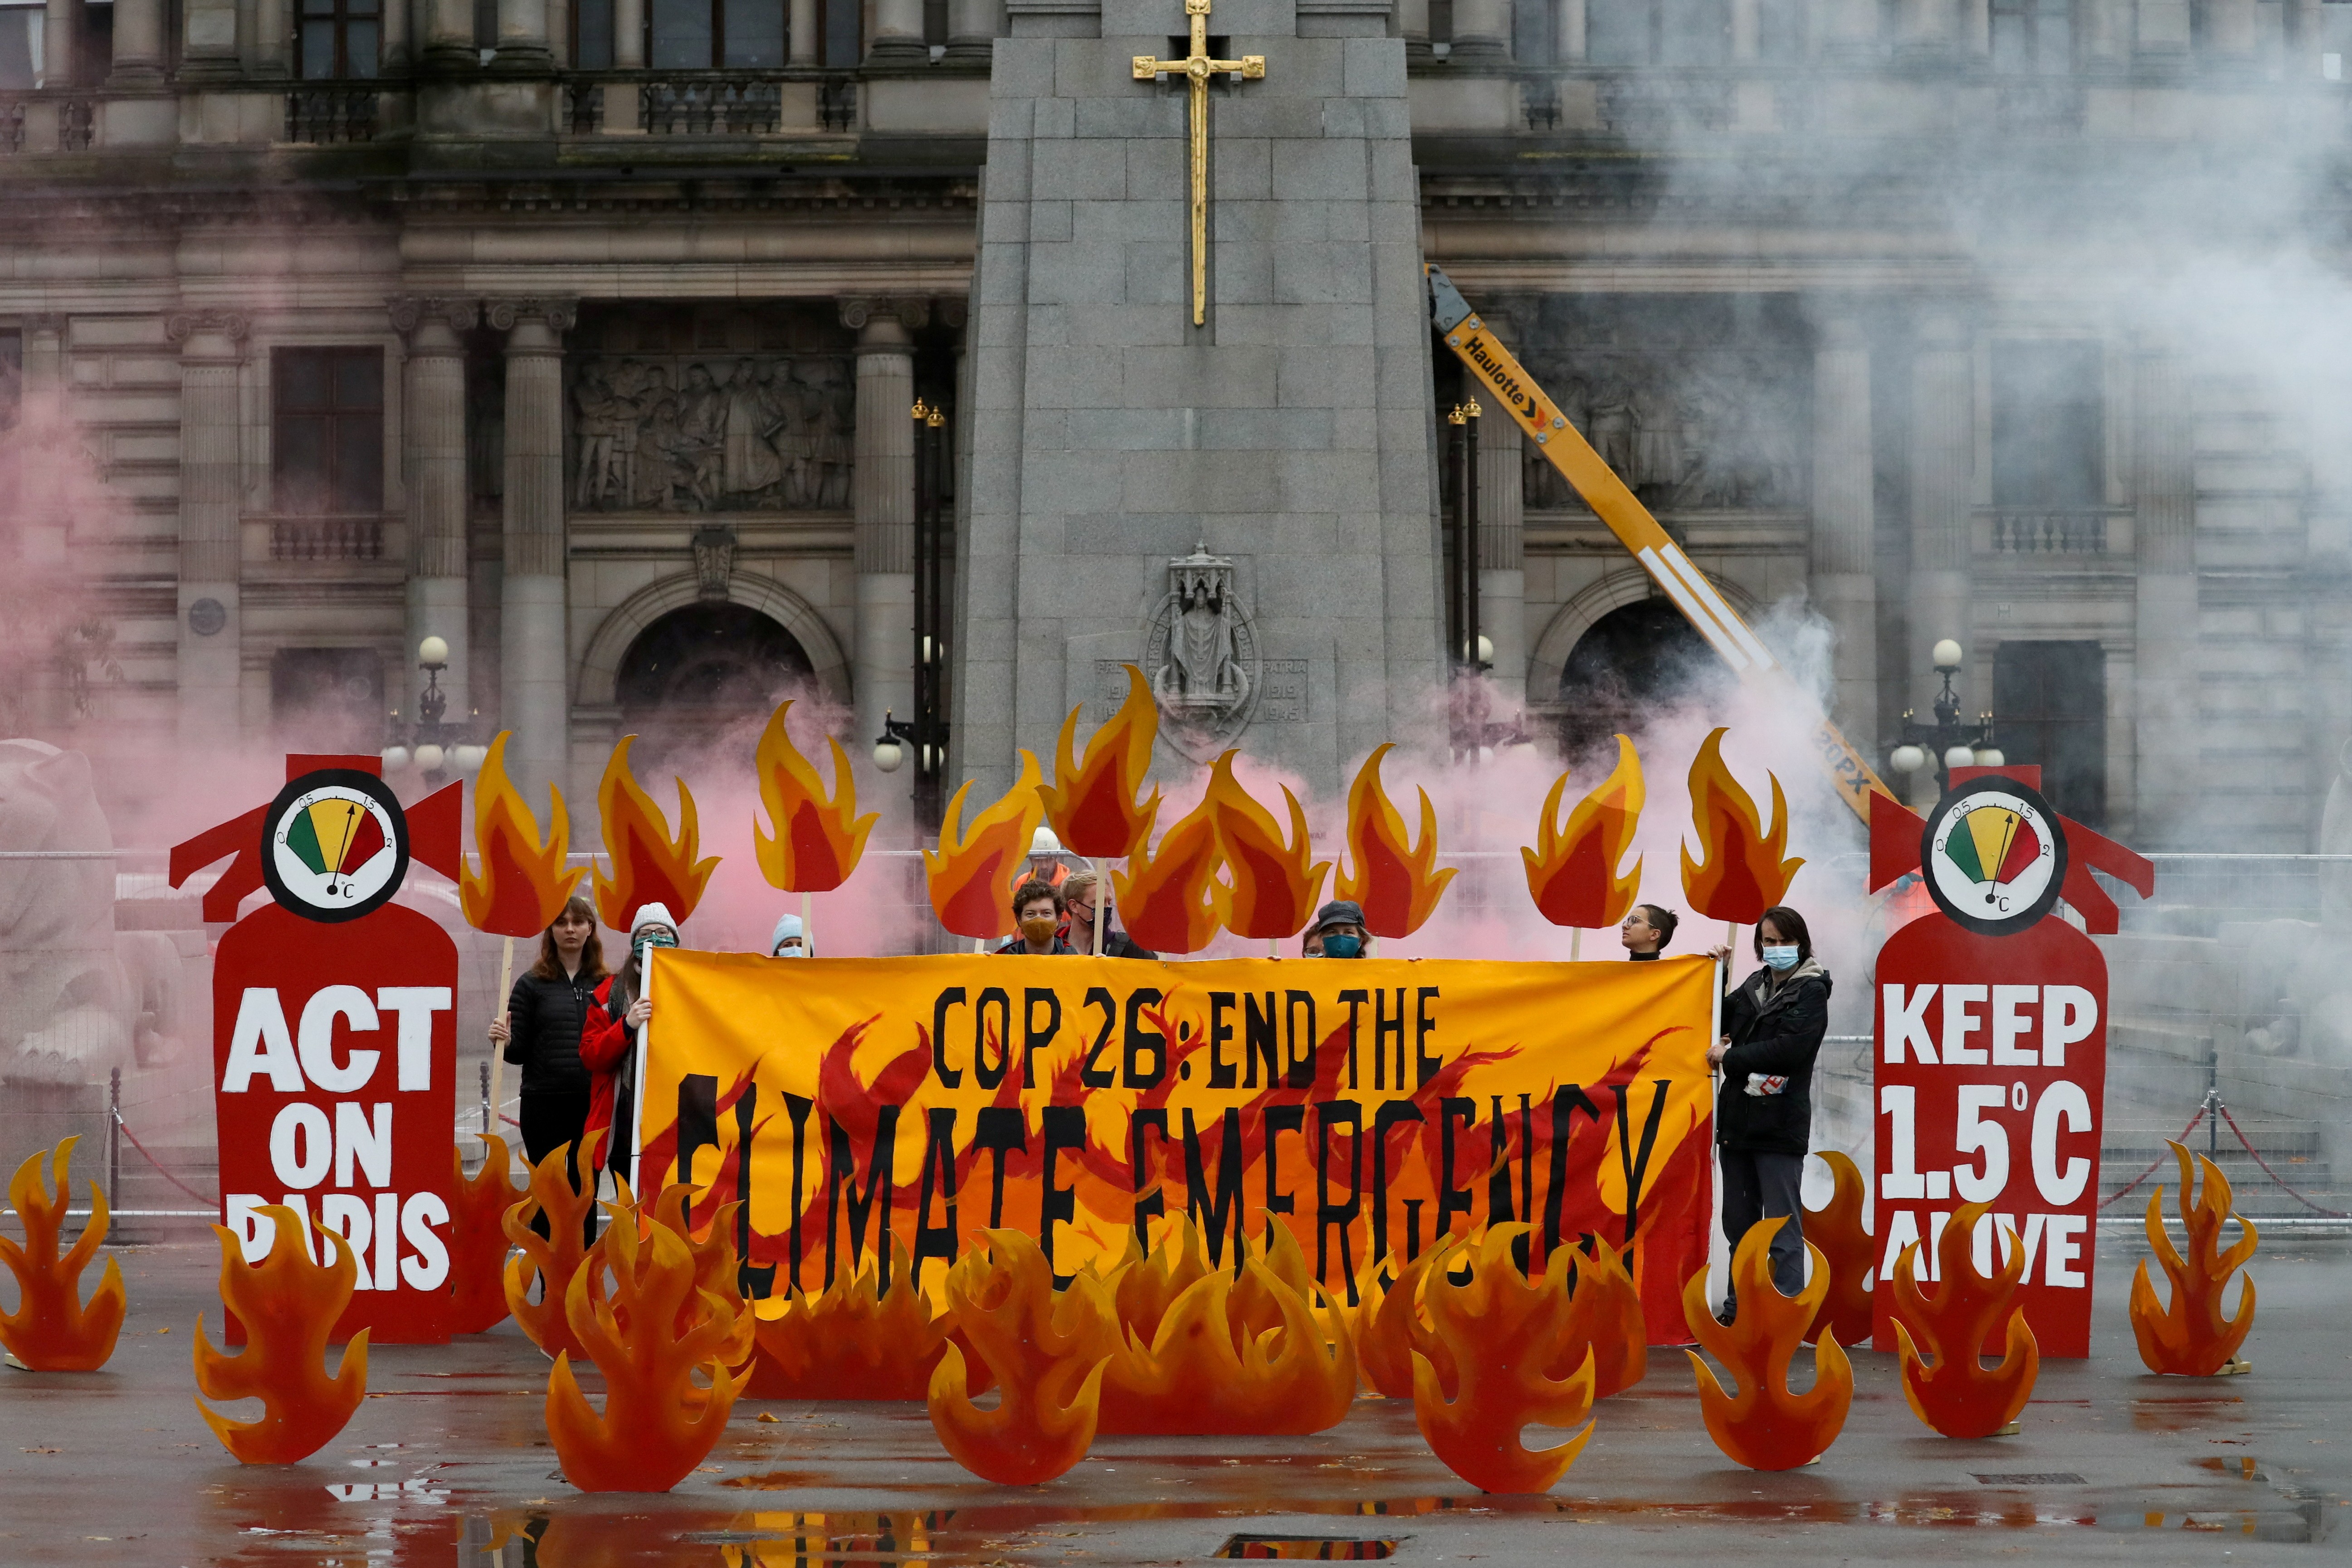 Manifestantes fazem alerta sobre aquecimento global em Glasgow, que sediará a cúpula do clima COP26 (Foto: REUTERS/Russell Cheyne)